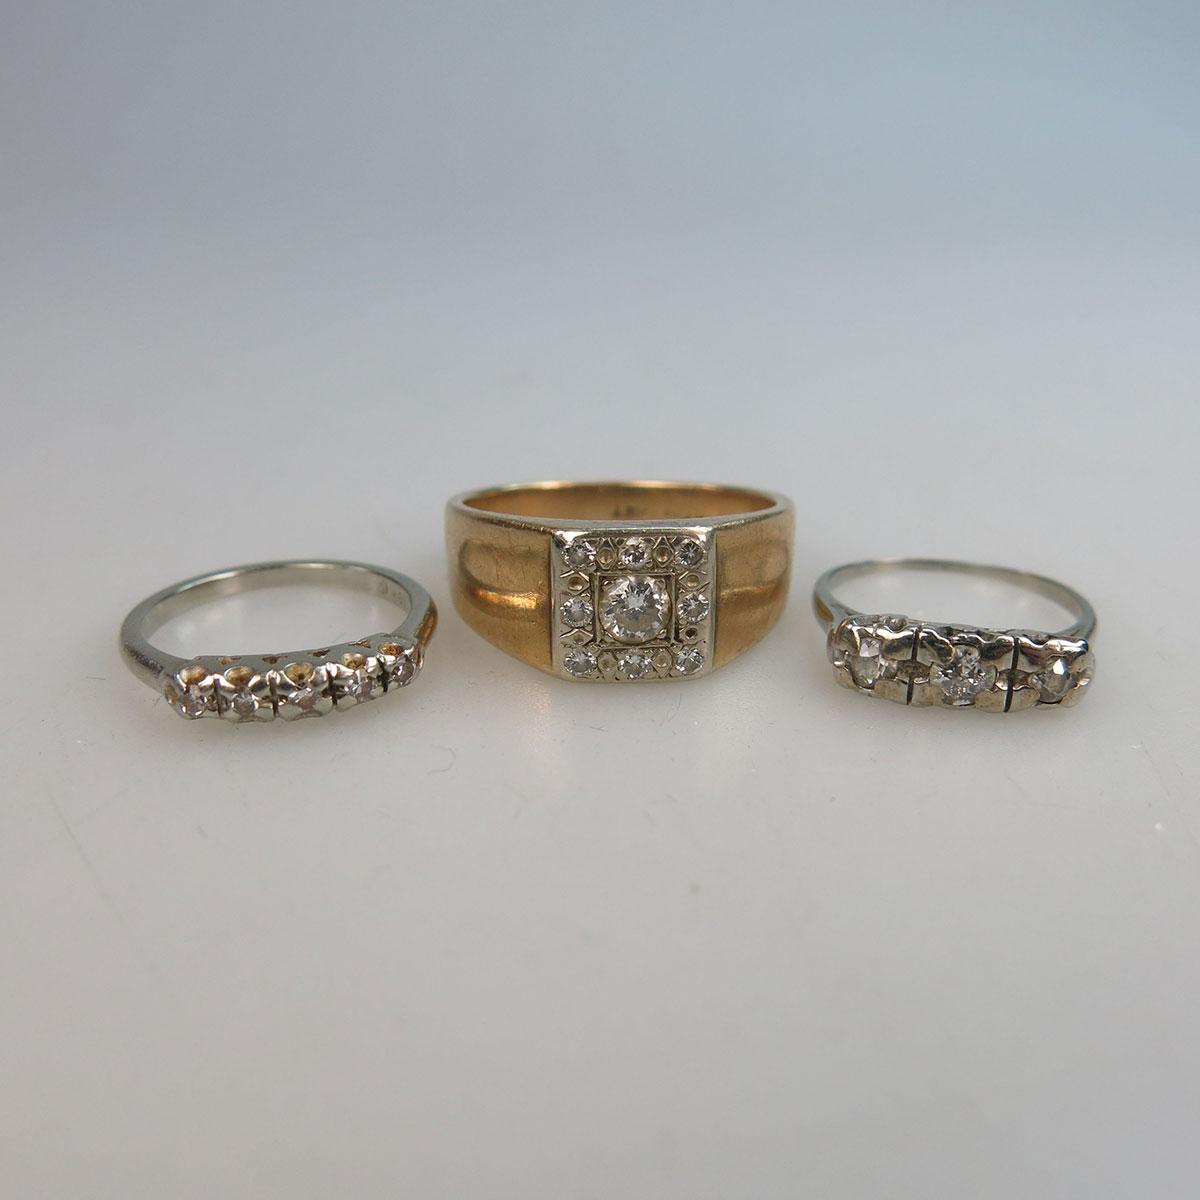 10k Yellow Gold Ring & 2 x 18k White Gold Rings